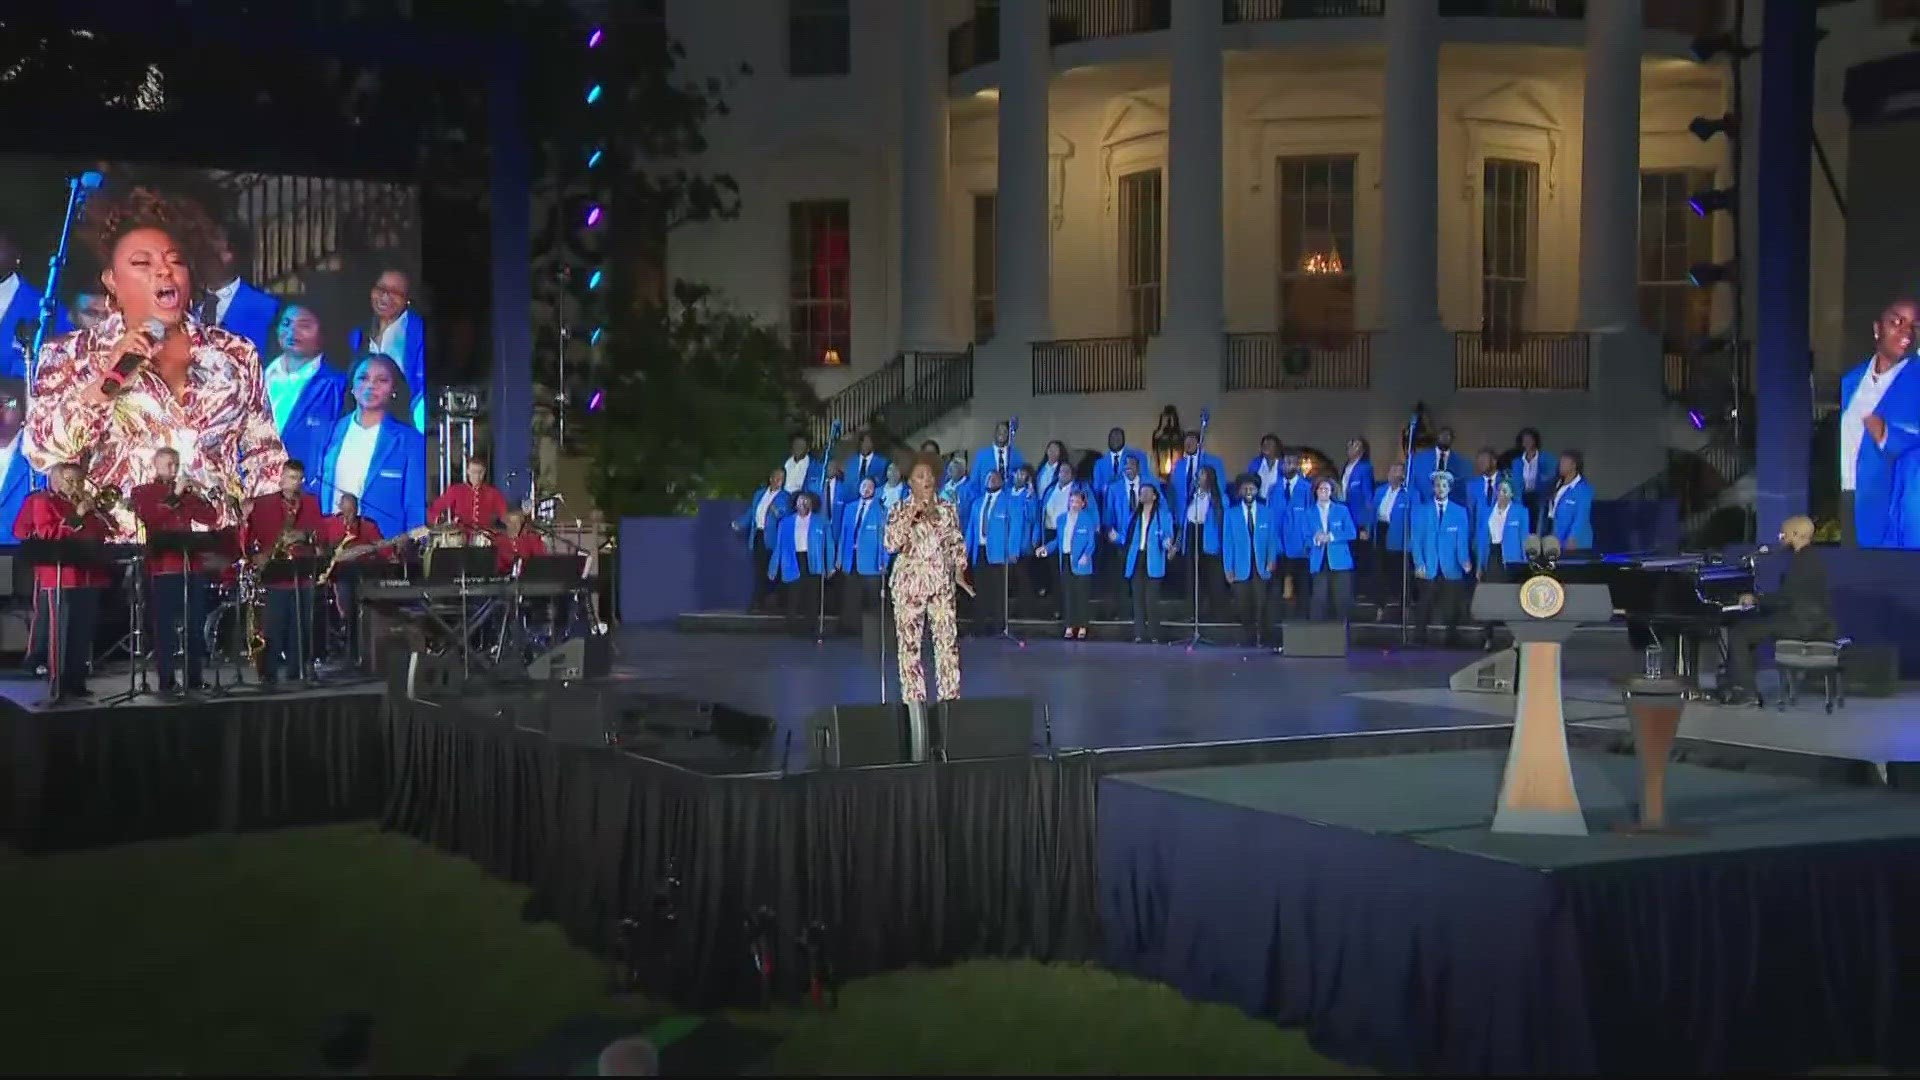 Biden hosts concert on White House lawn